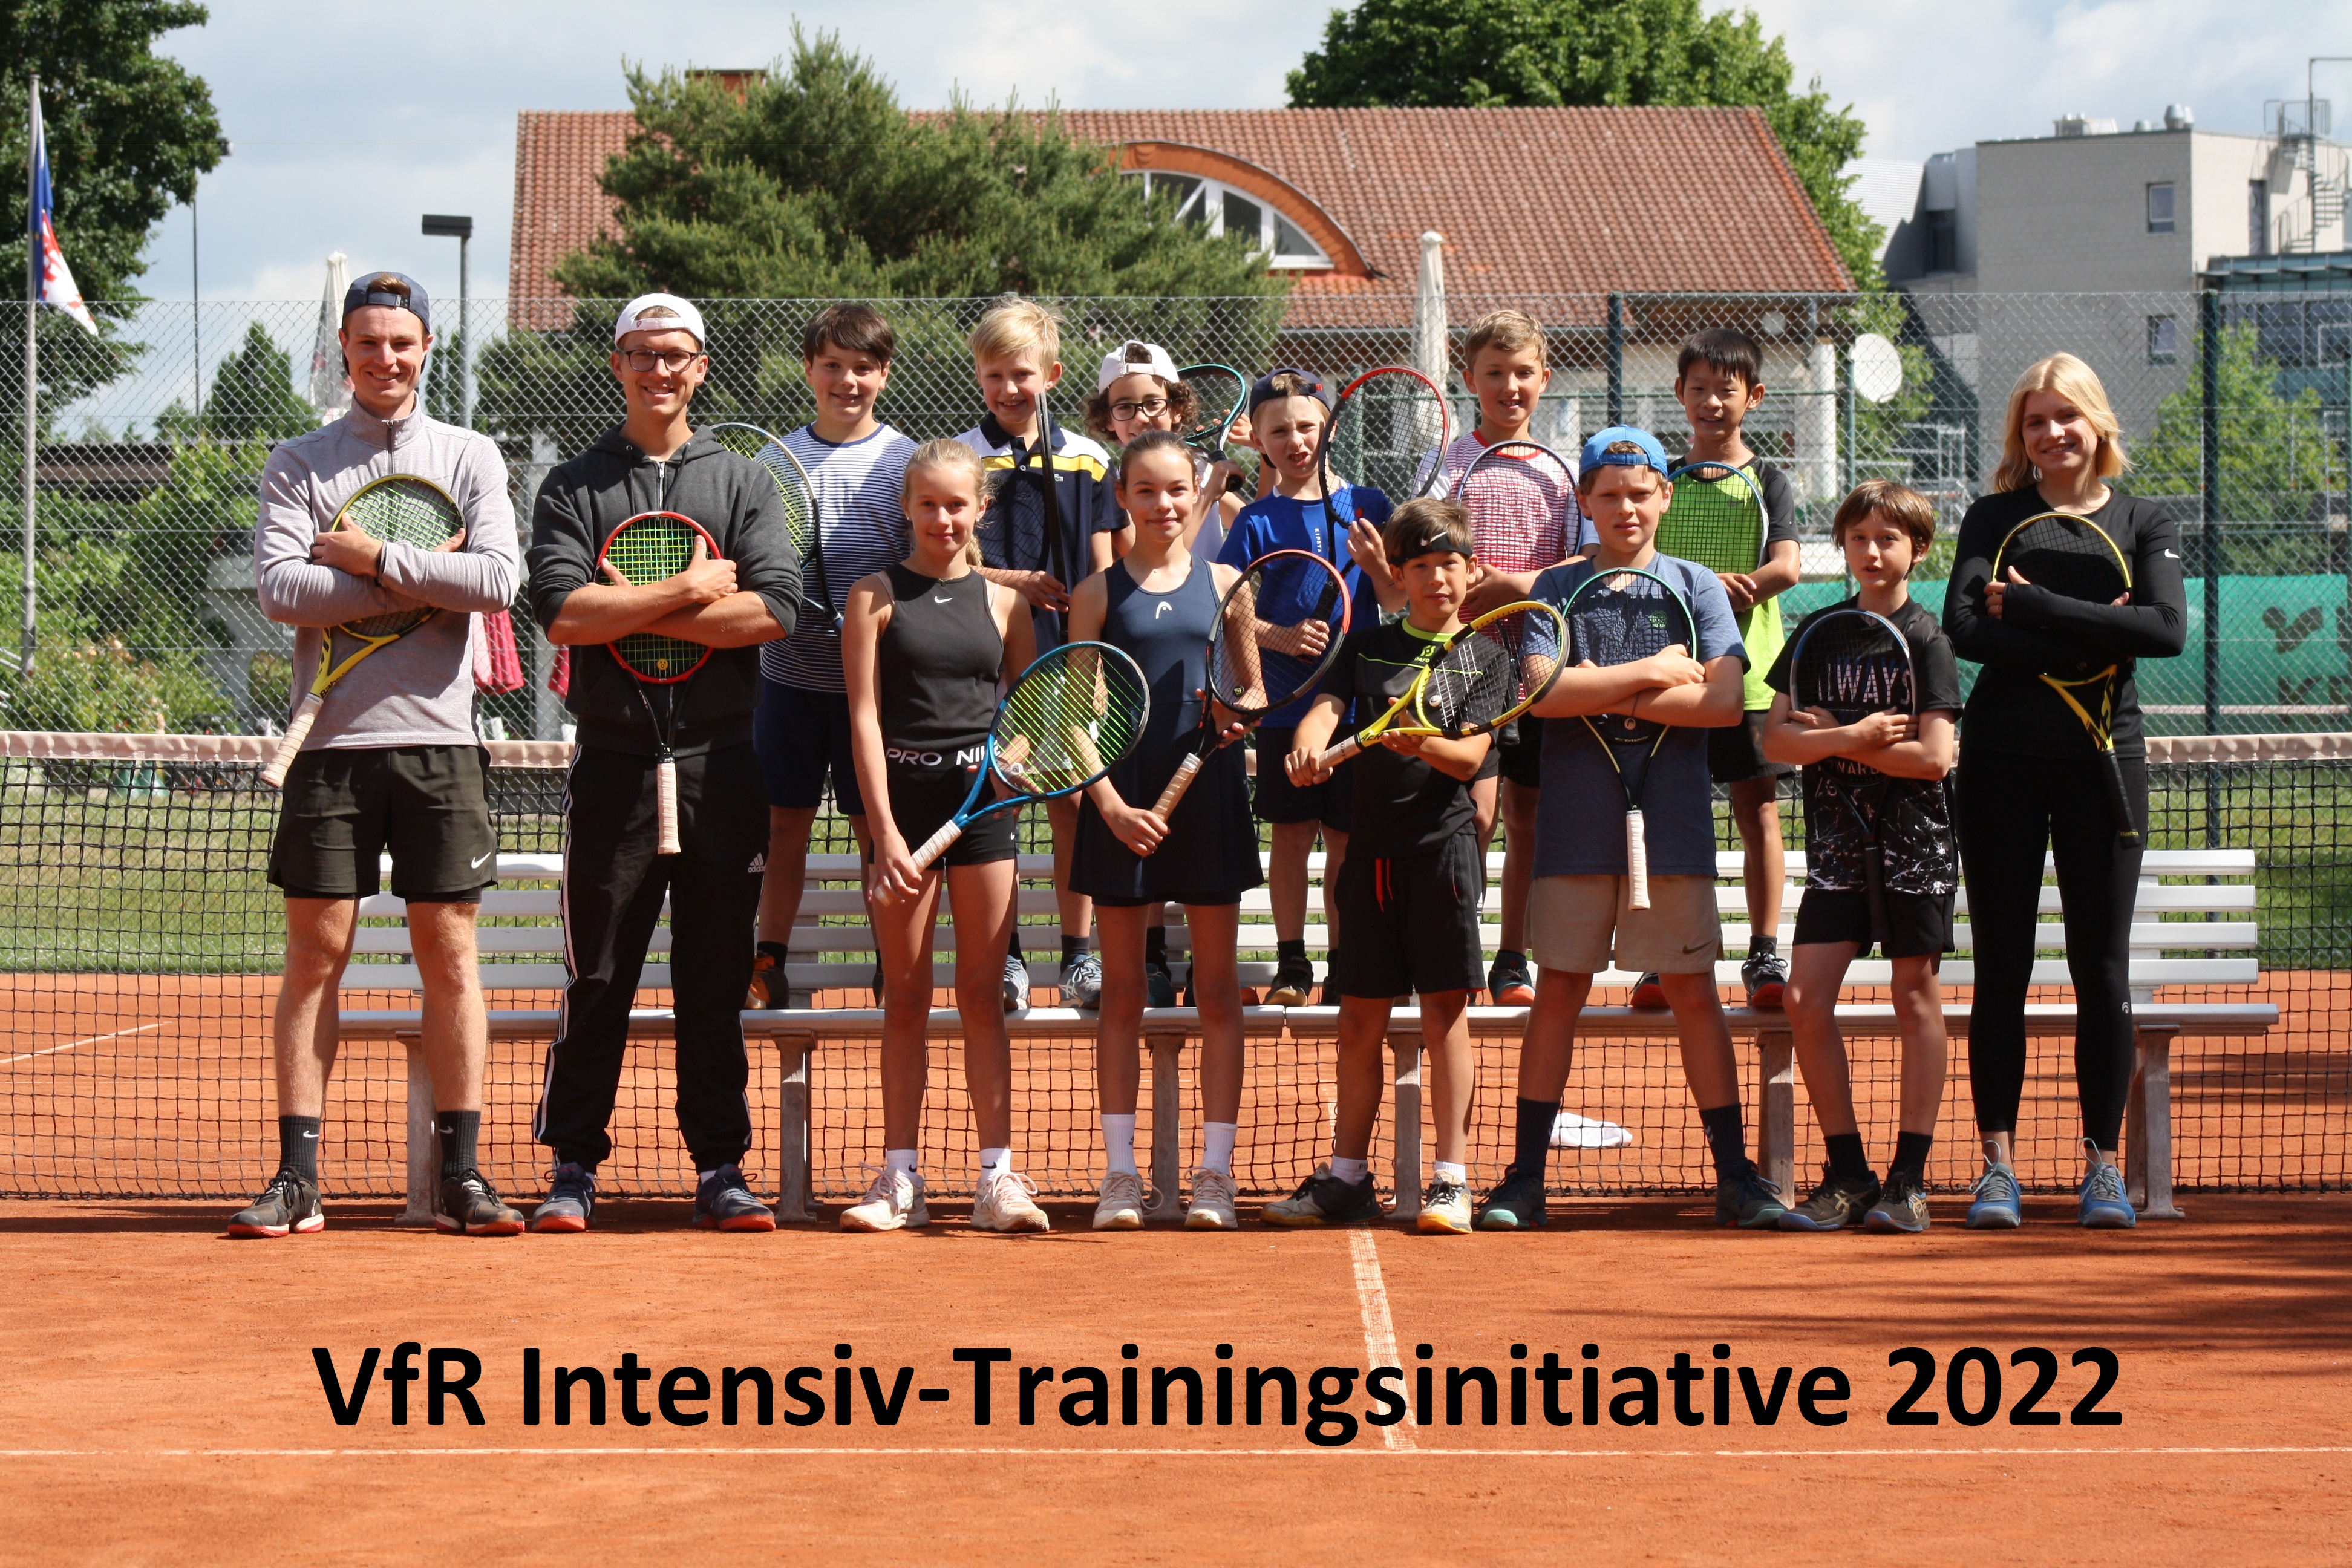 VfR Intensiv-Trainingsinitiative 2022 - Gruppenbild 1 - Justus Baumgart Tennis.JPG